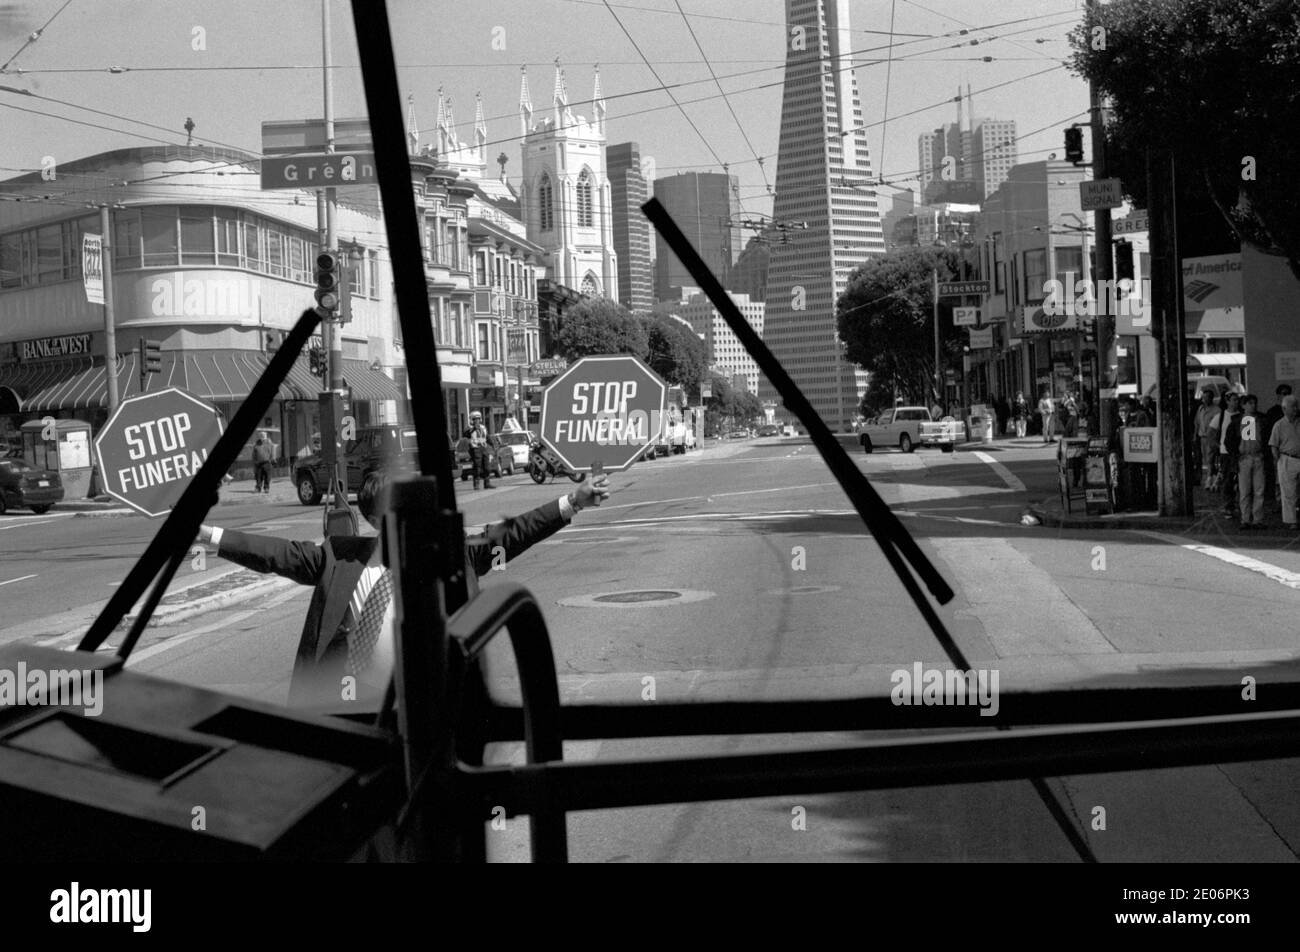 Beerdigung in Arbeit Mann hält ein Stop Funeral Zeichen, San Francisco Kalifornien USA 1999. 90er Jahre aus dem Inneren eines Greyhound-Busses. HOMER SYKES Stockfoto